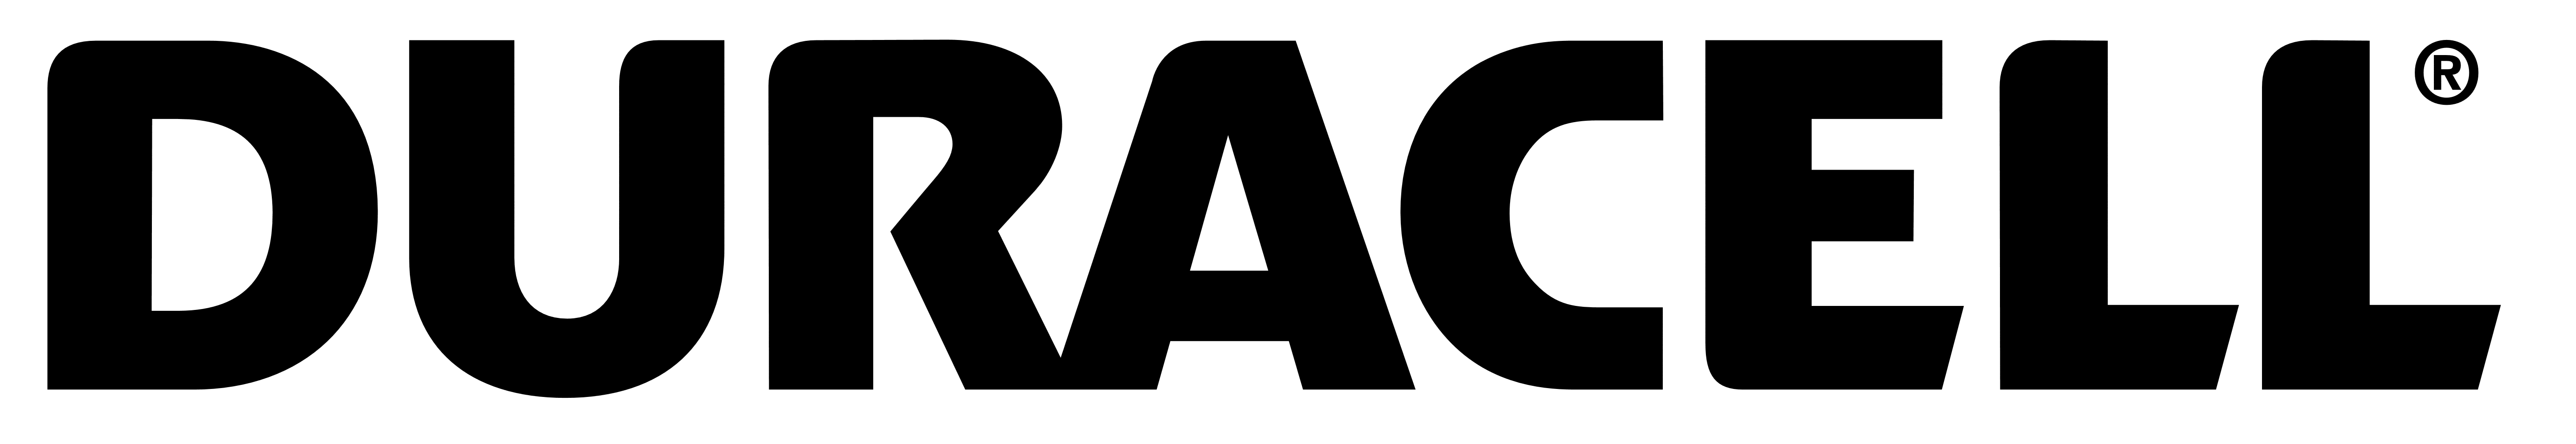 Duracell logo, logotype